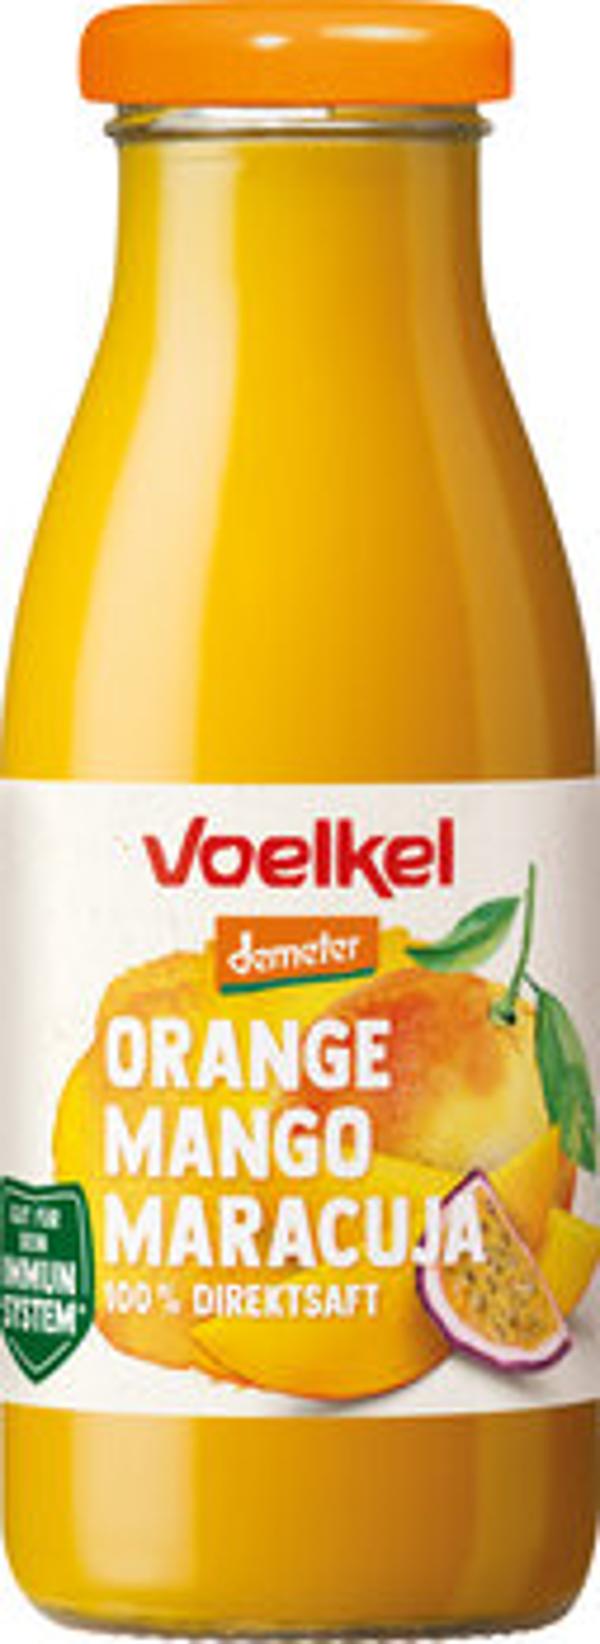 Produktfoto zu Voelkel Smoothie Orange Mango Maracuja 0,25l